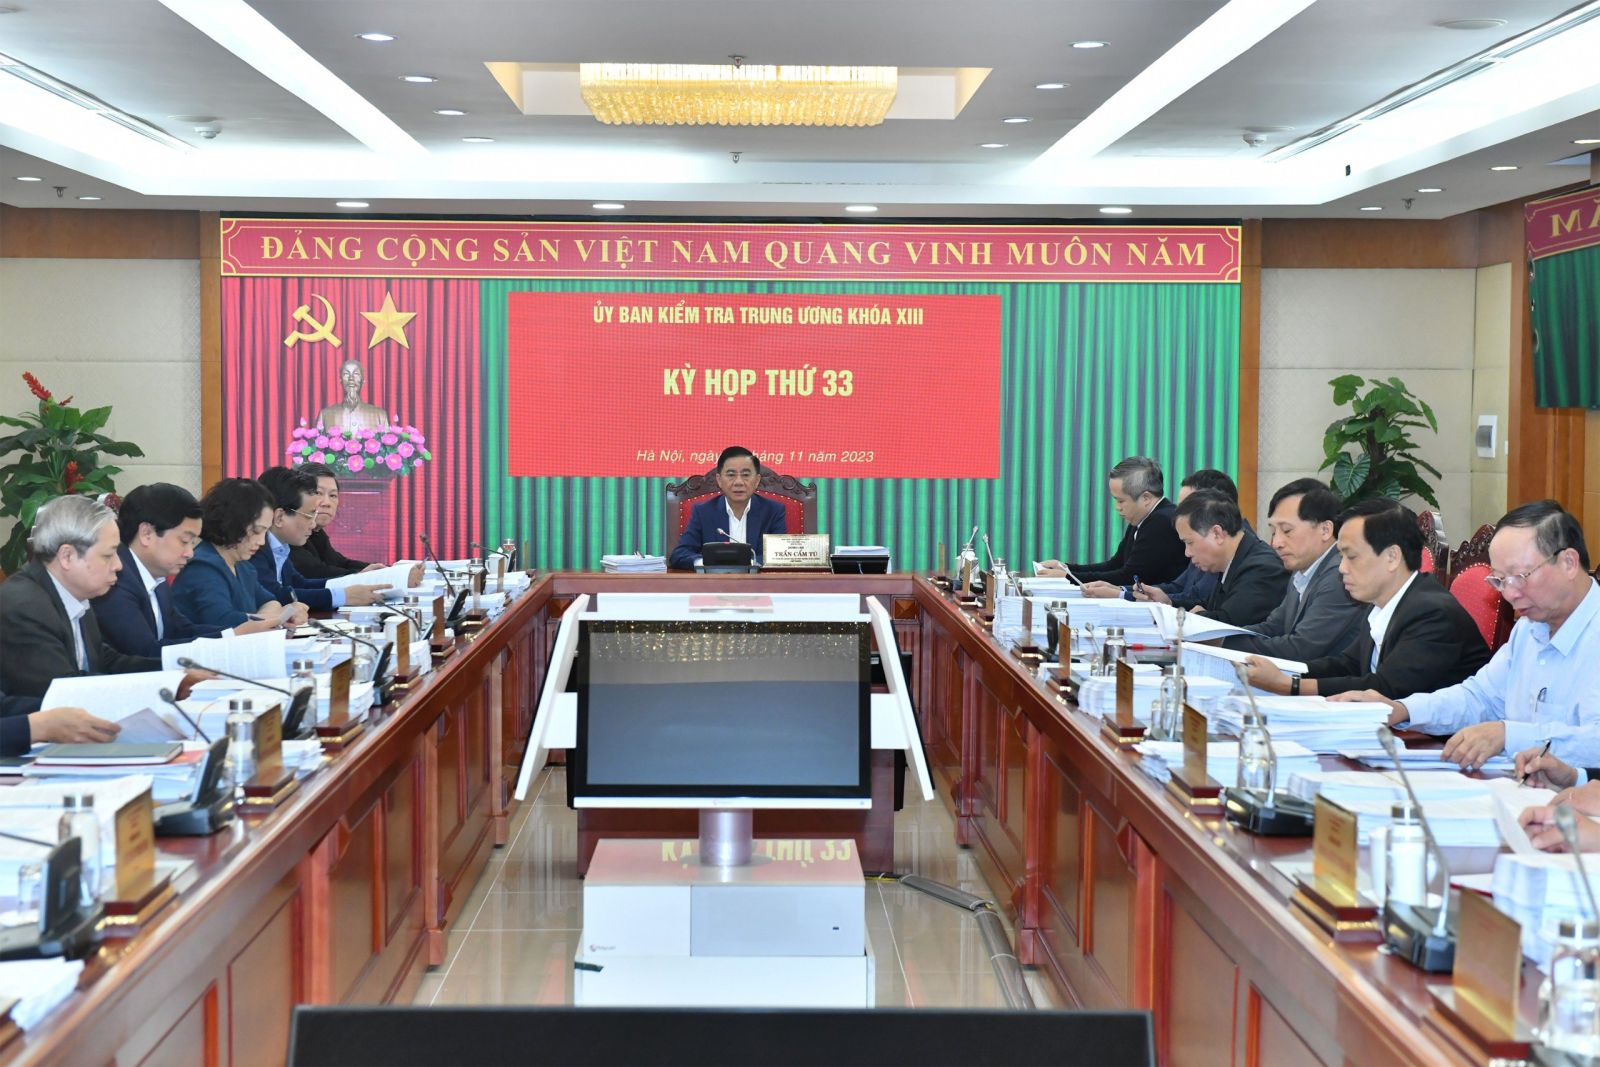 Phó Thủ tướng ký quyết định kỷ luật Chủ tịch và nguyên Chủ tịch UBND tỉnh Quảng Nam- Ảnh 1.